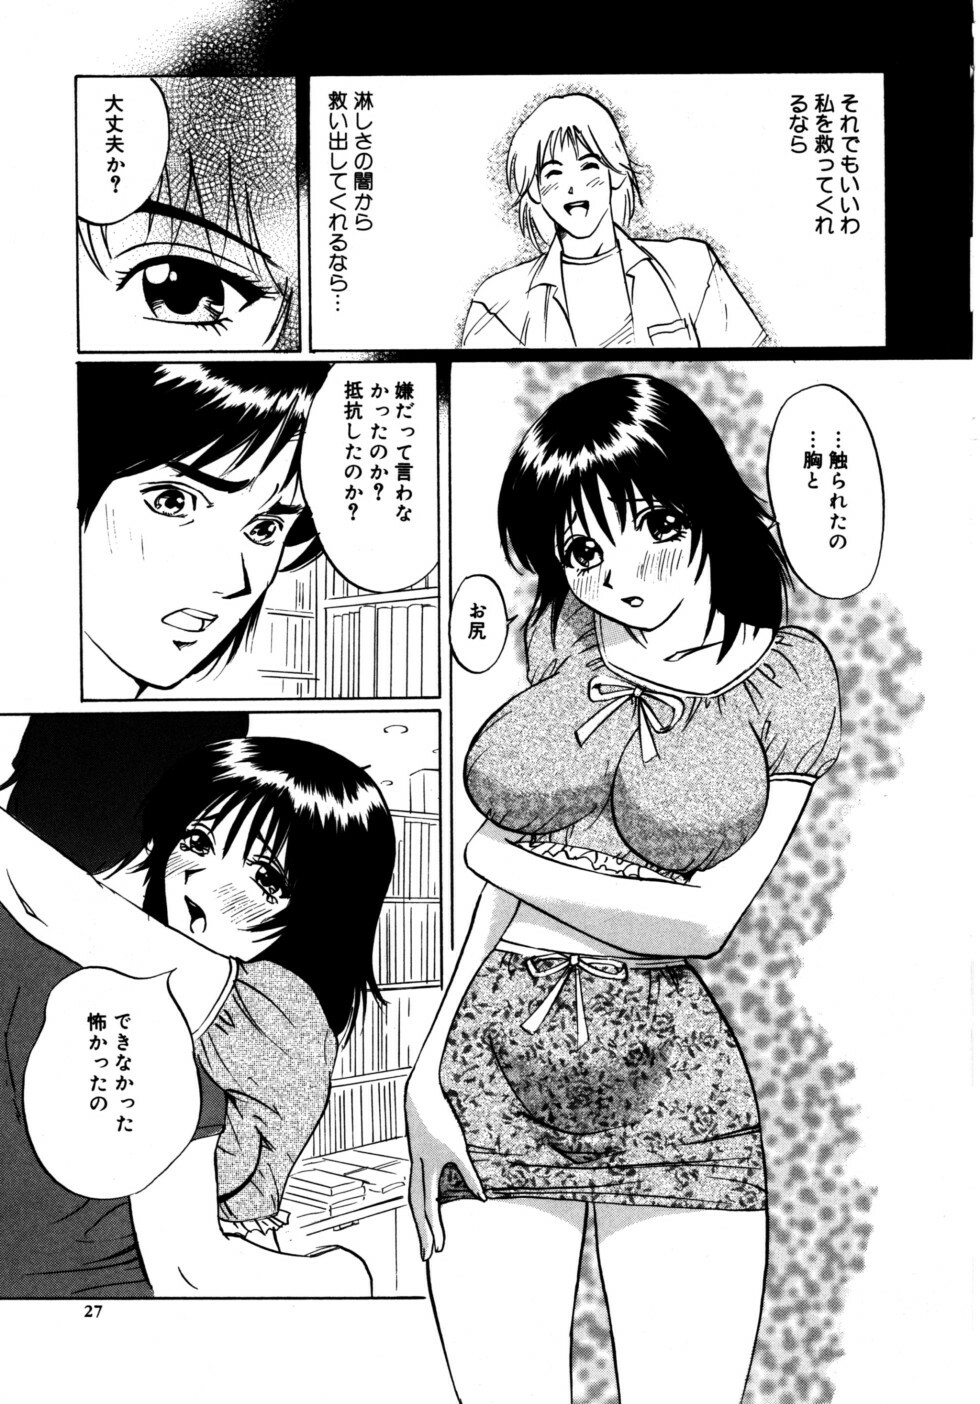 [Shirogane Anjyu] Nukumori No Kioku page 27 full